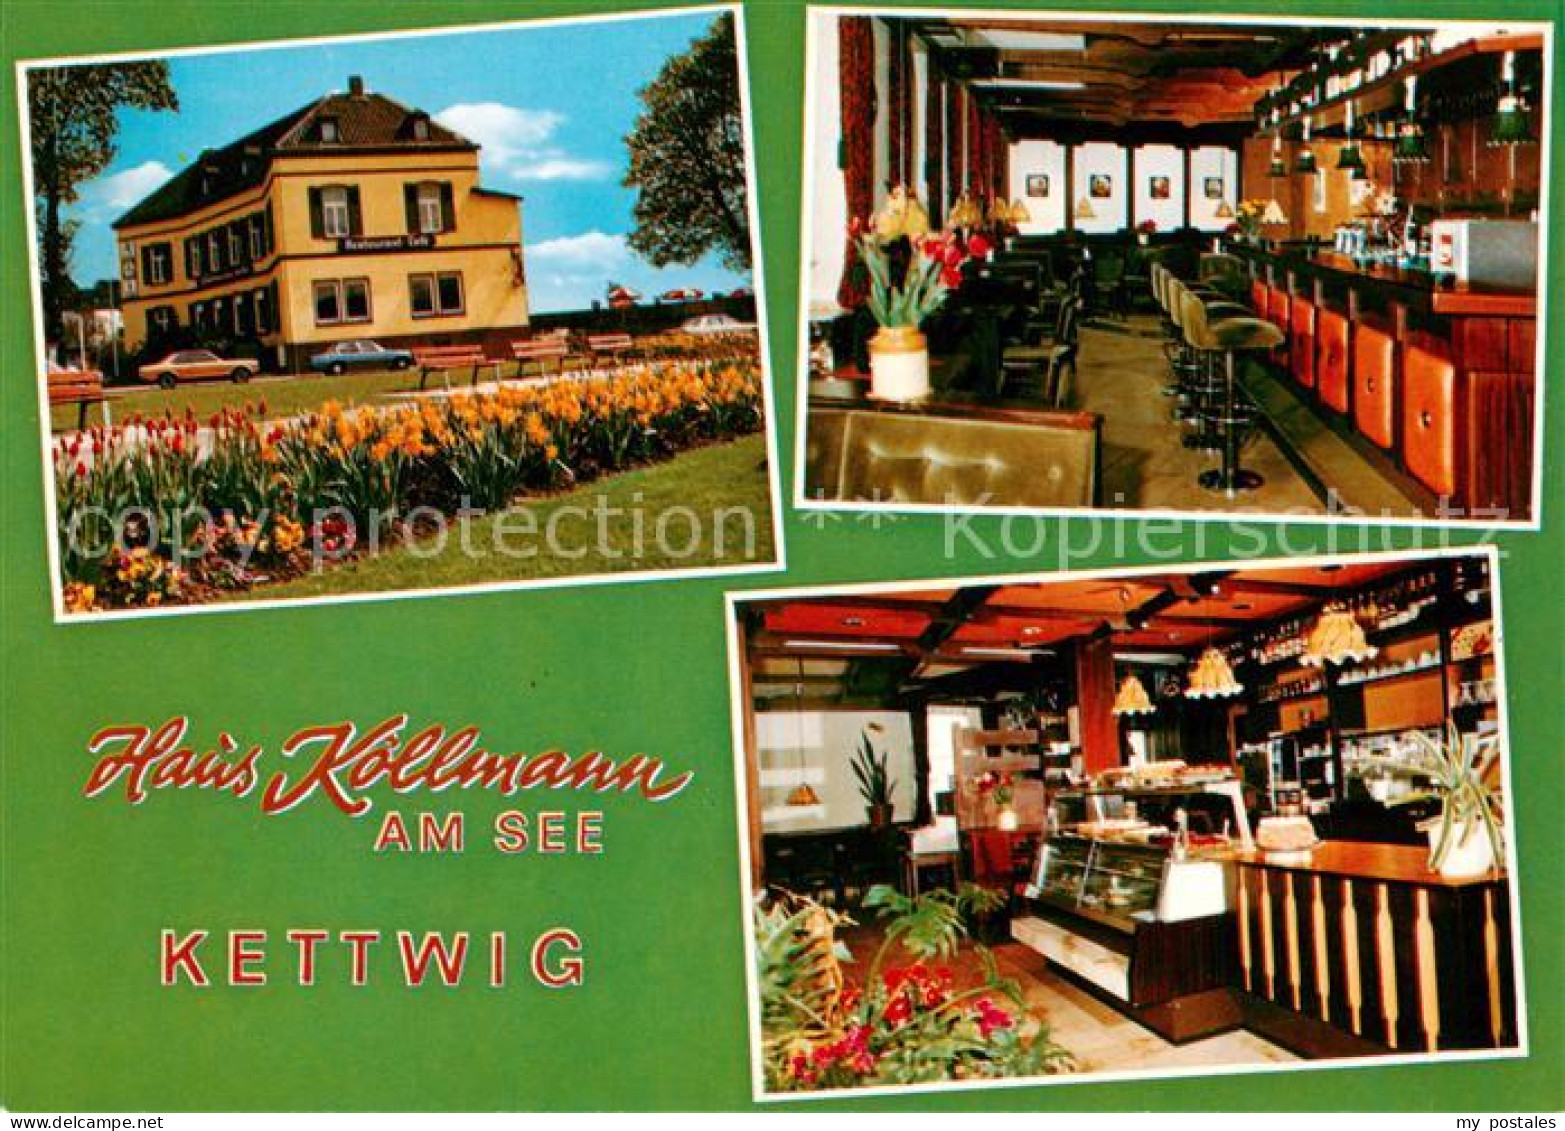 73867209 Kettwig Haus Koellmann Am See Cafe Restaurant Kettwig - Essen